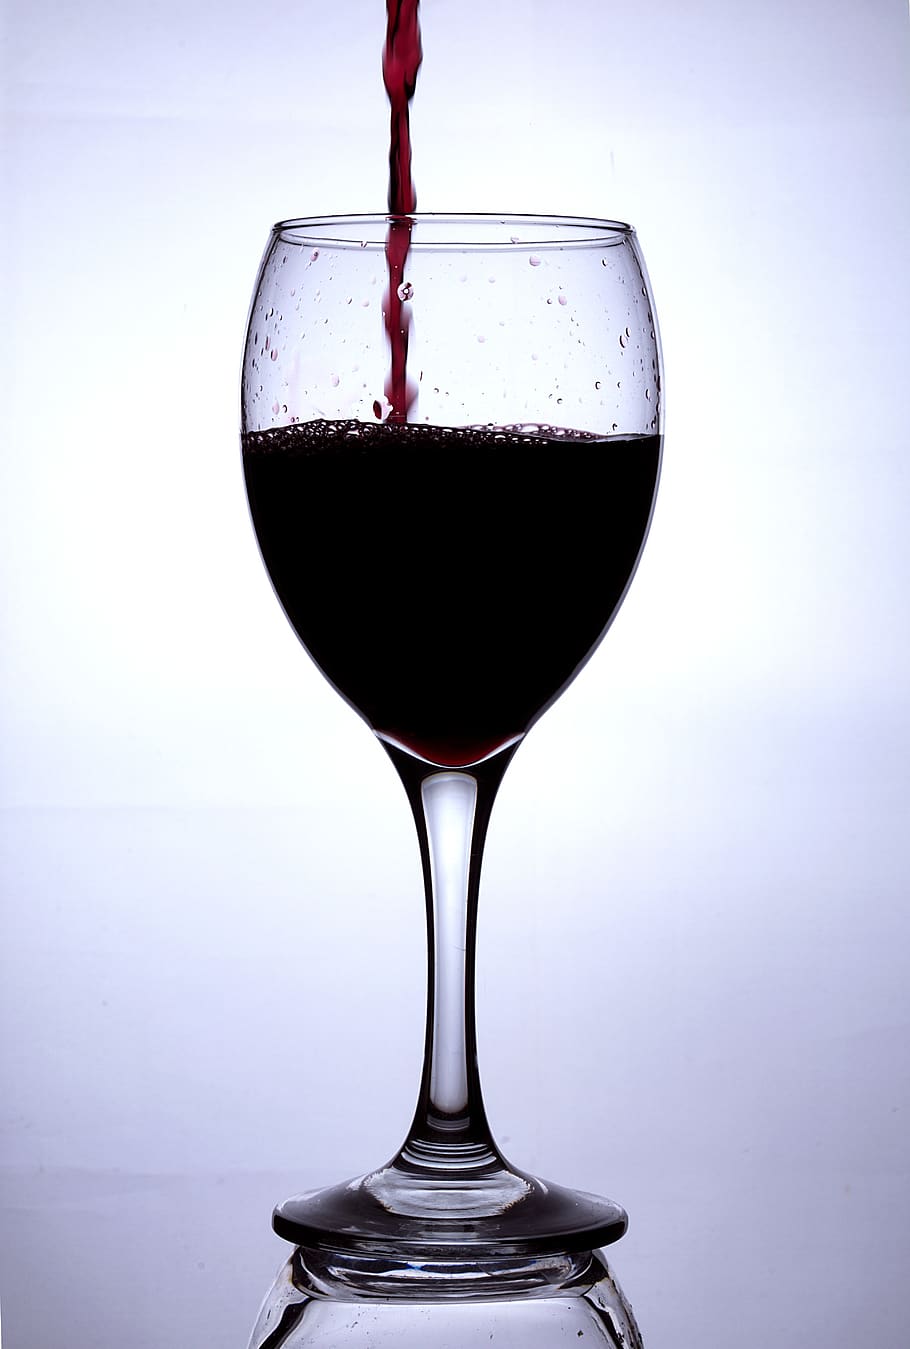 gelas anggur, anggur merah, anggur, gelas, menuangkan, masih hidup, minuman, penyegaran, makanan dan minuman, alkohol